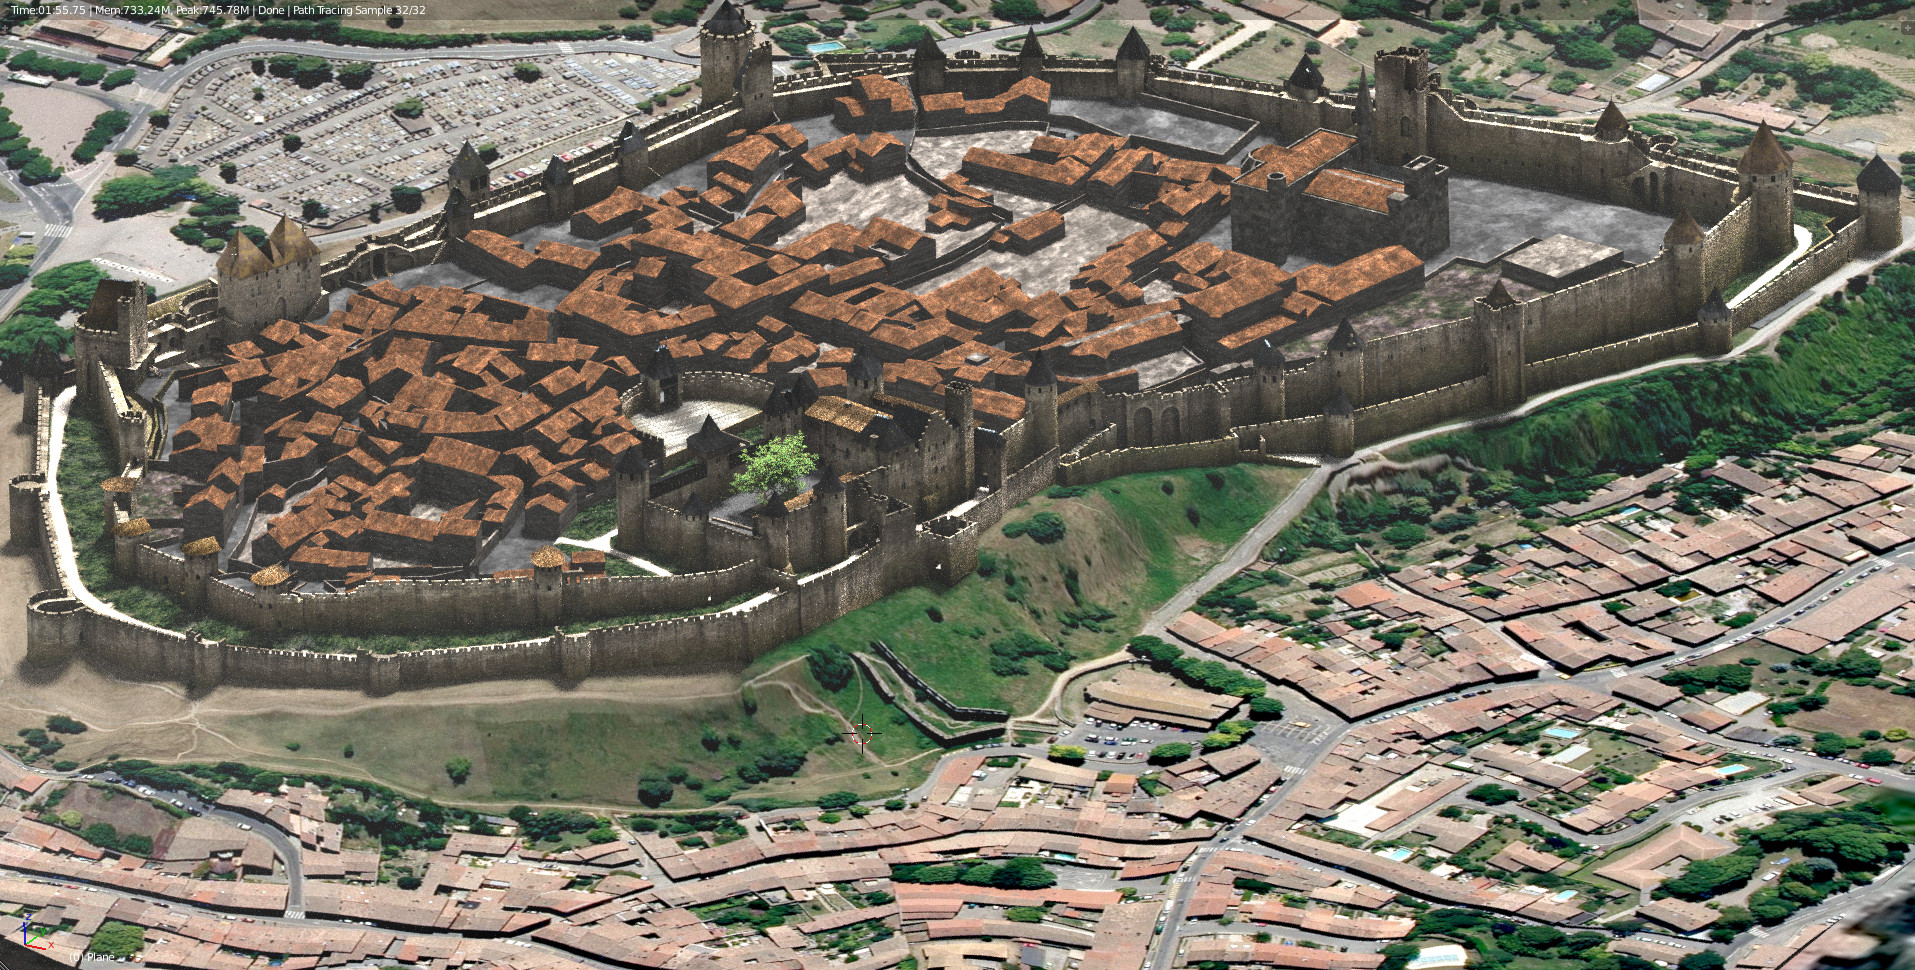 La cité médiévale en 3D vue du ciel.